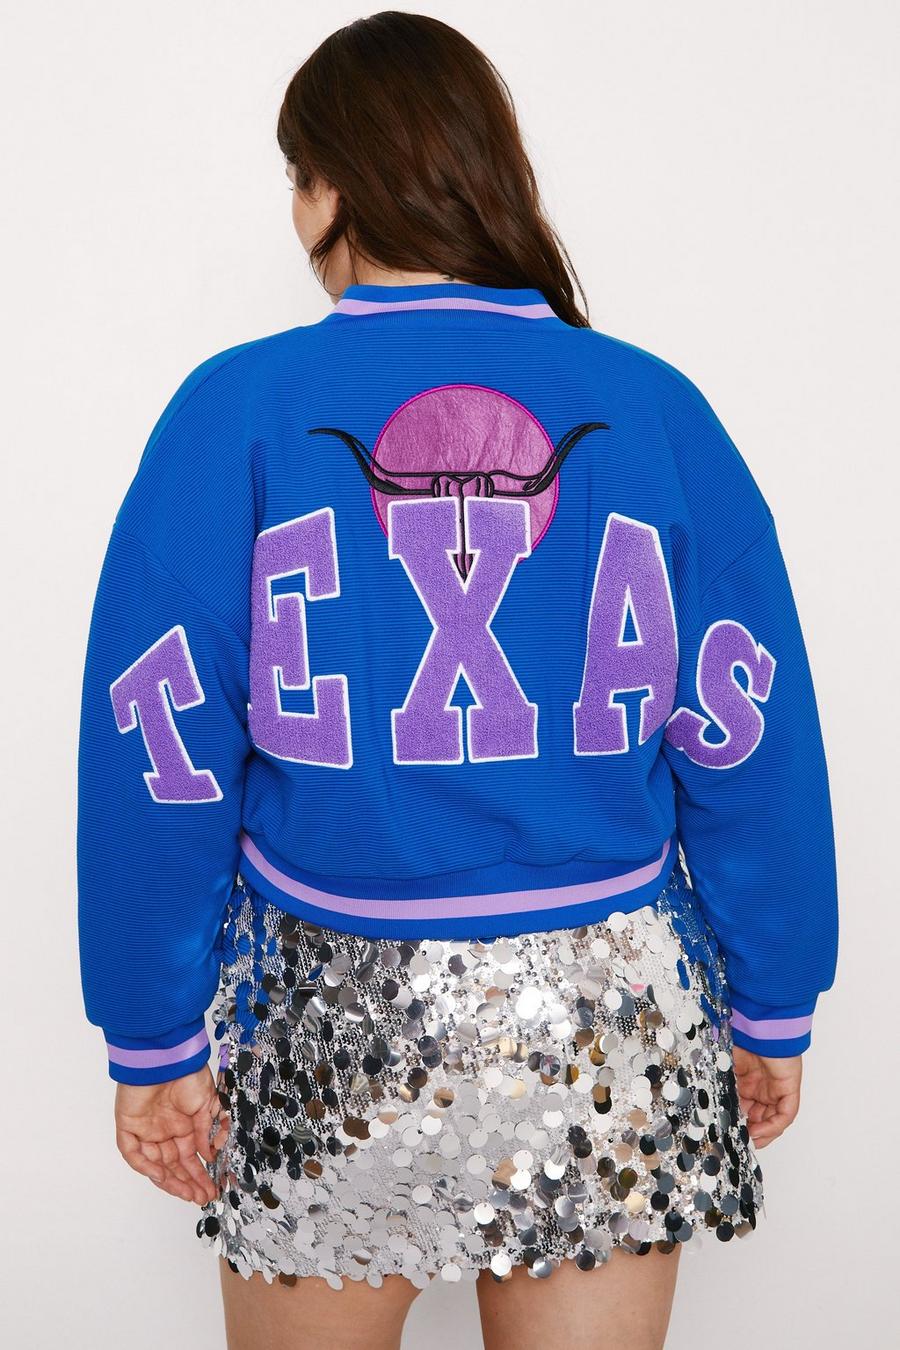 Plus Size Texas Back Knitted Varsity Jacket